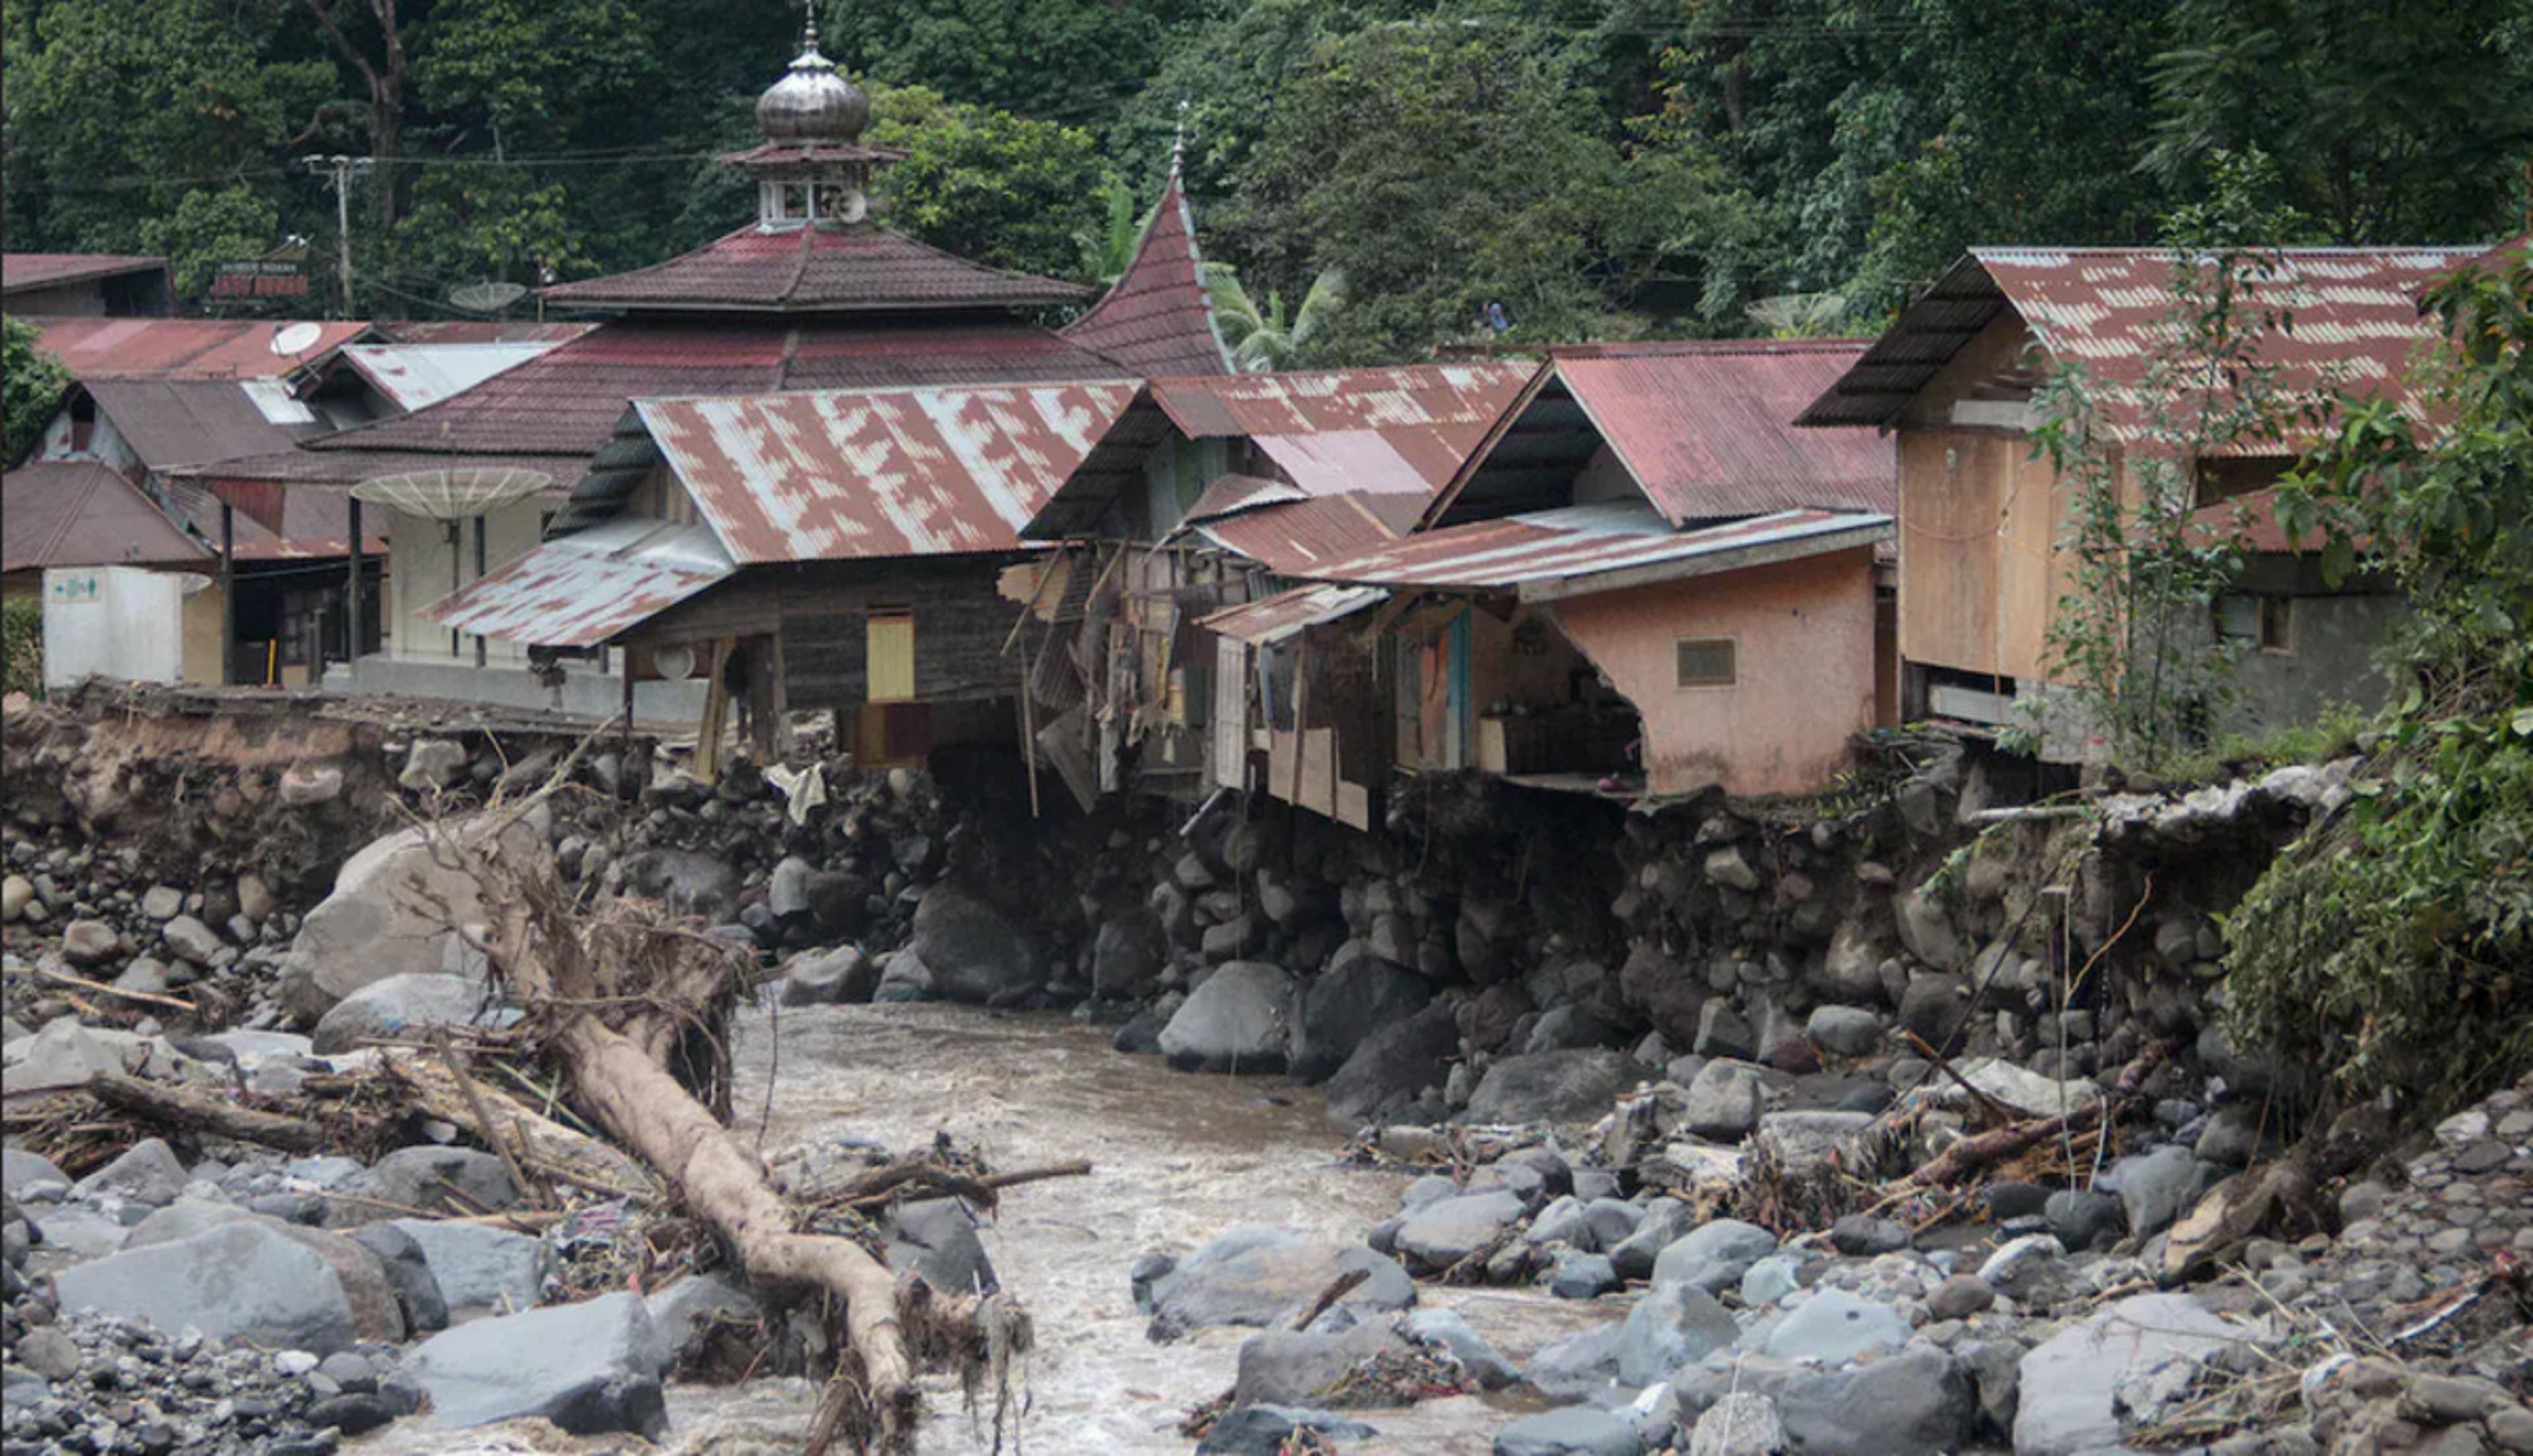 इंडोनेशिया में ठंडे लावे की बाढ़ ने मचाई तबाही, अब तक 52 लोगों की मौत